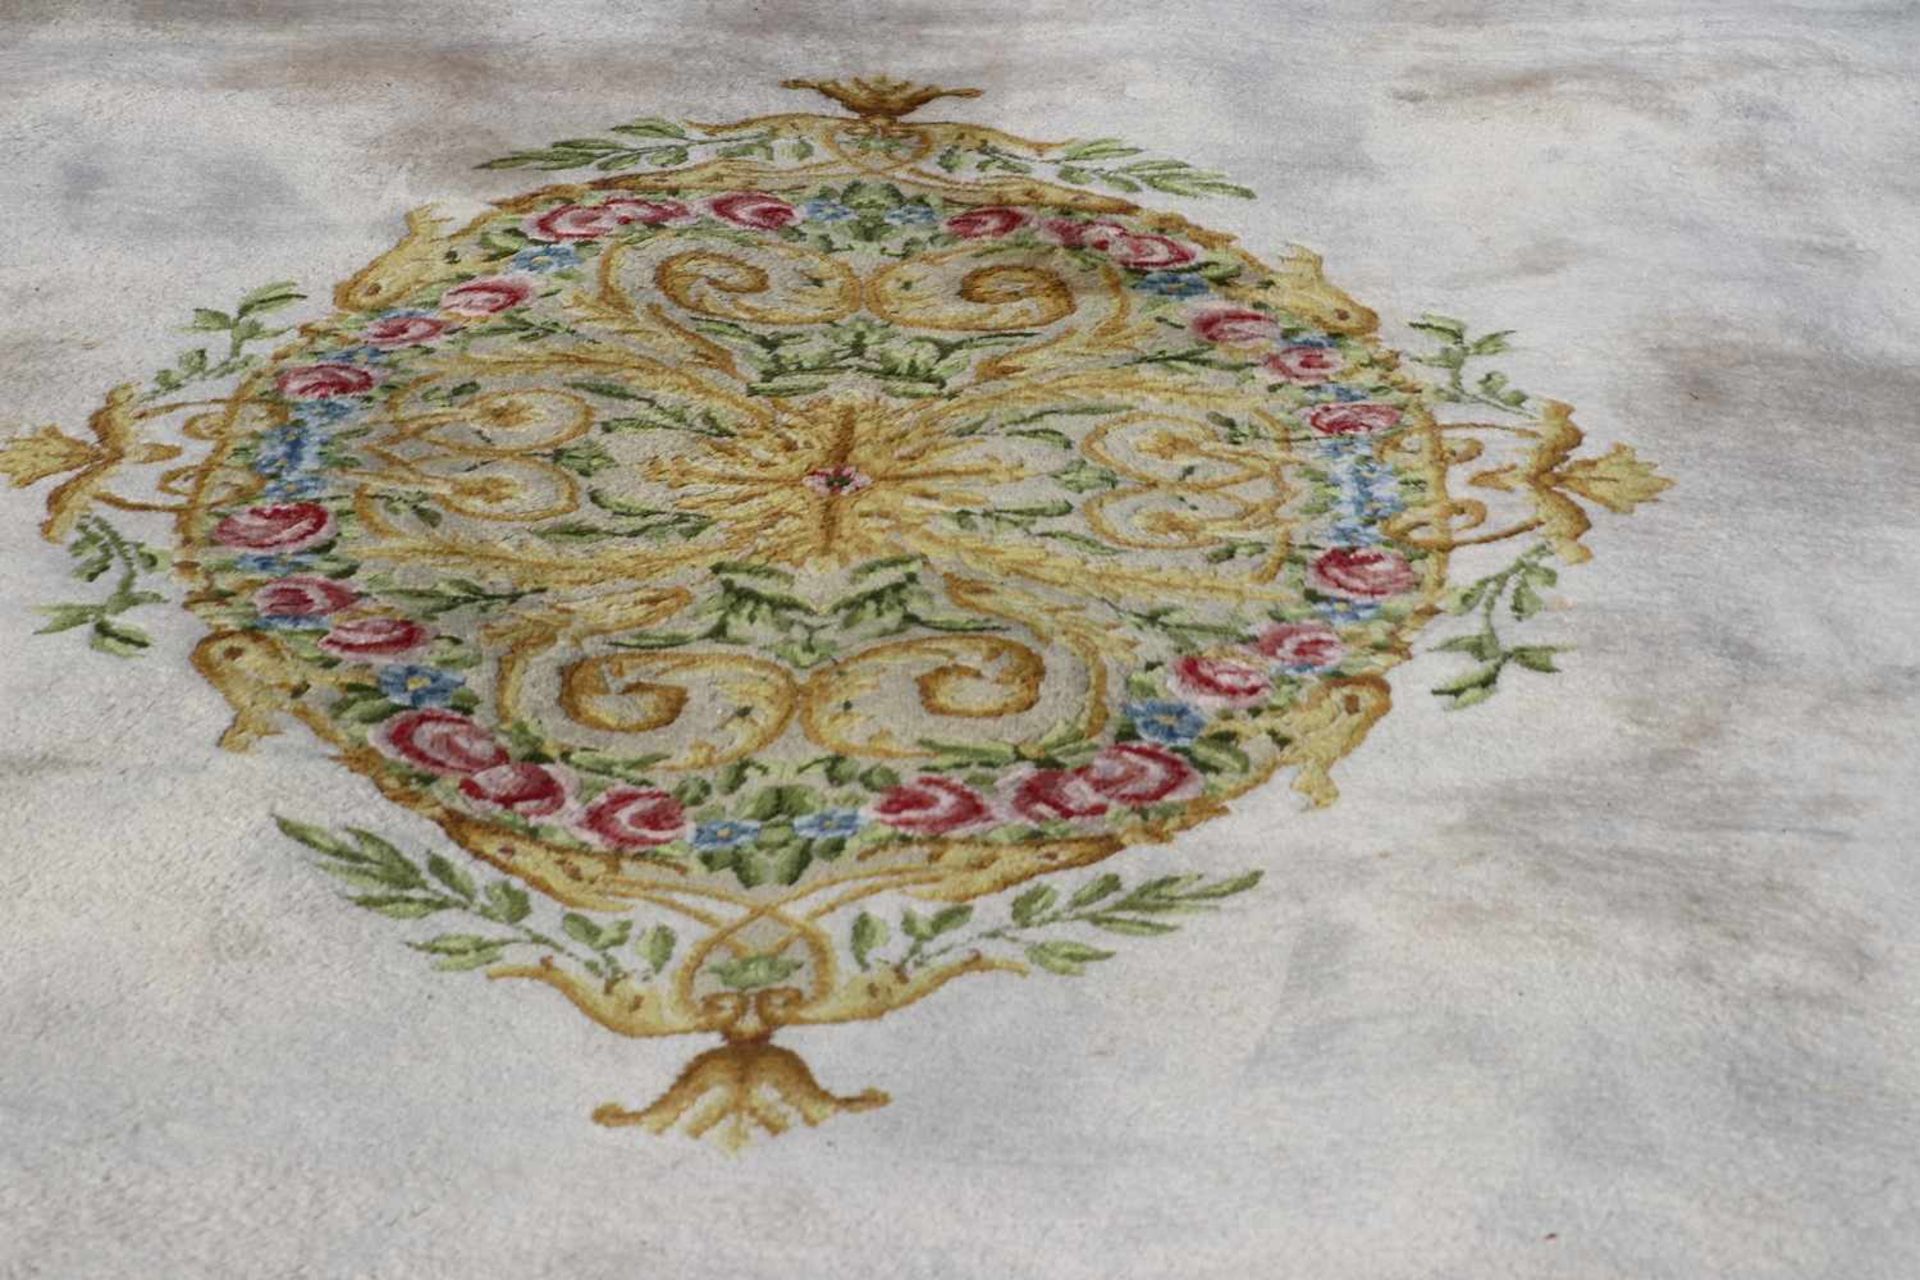 Großer Teppich, AubussonWolle, leicht fleckig, 650 x 380 cm. - Bild 2 aus 3